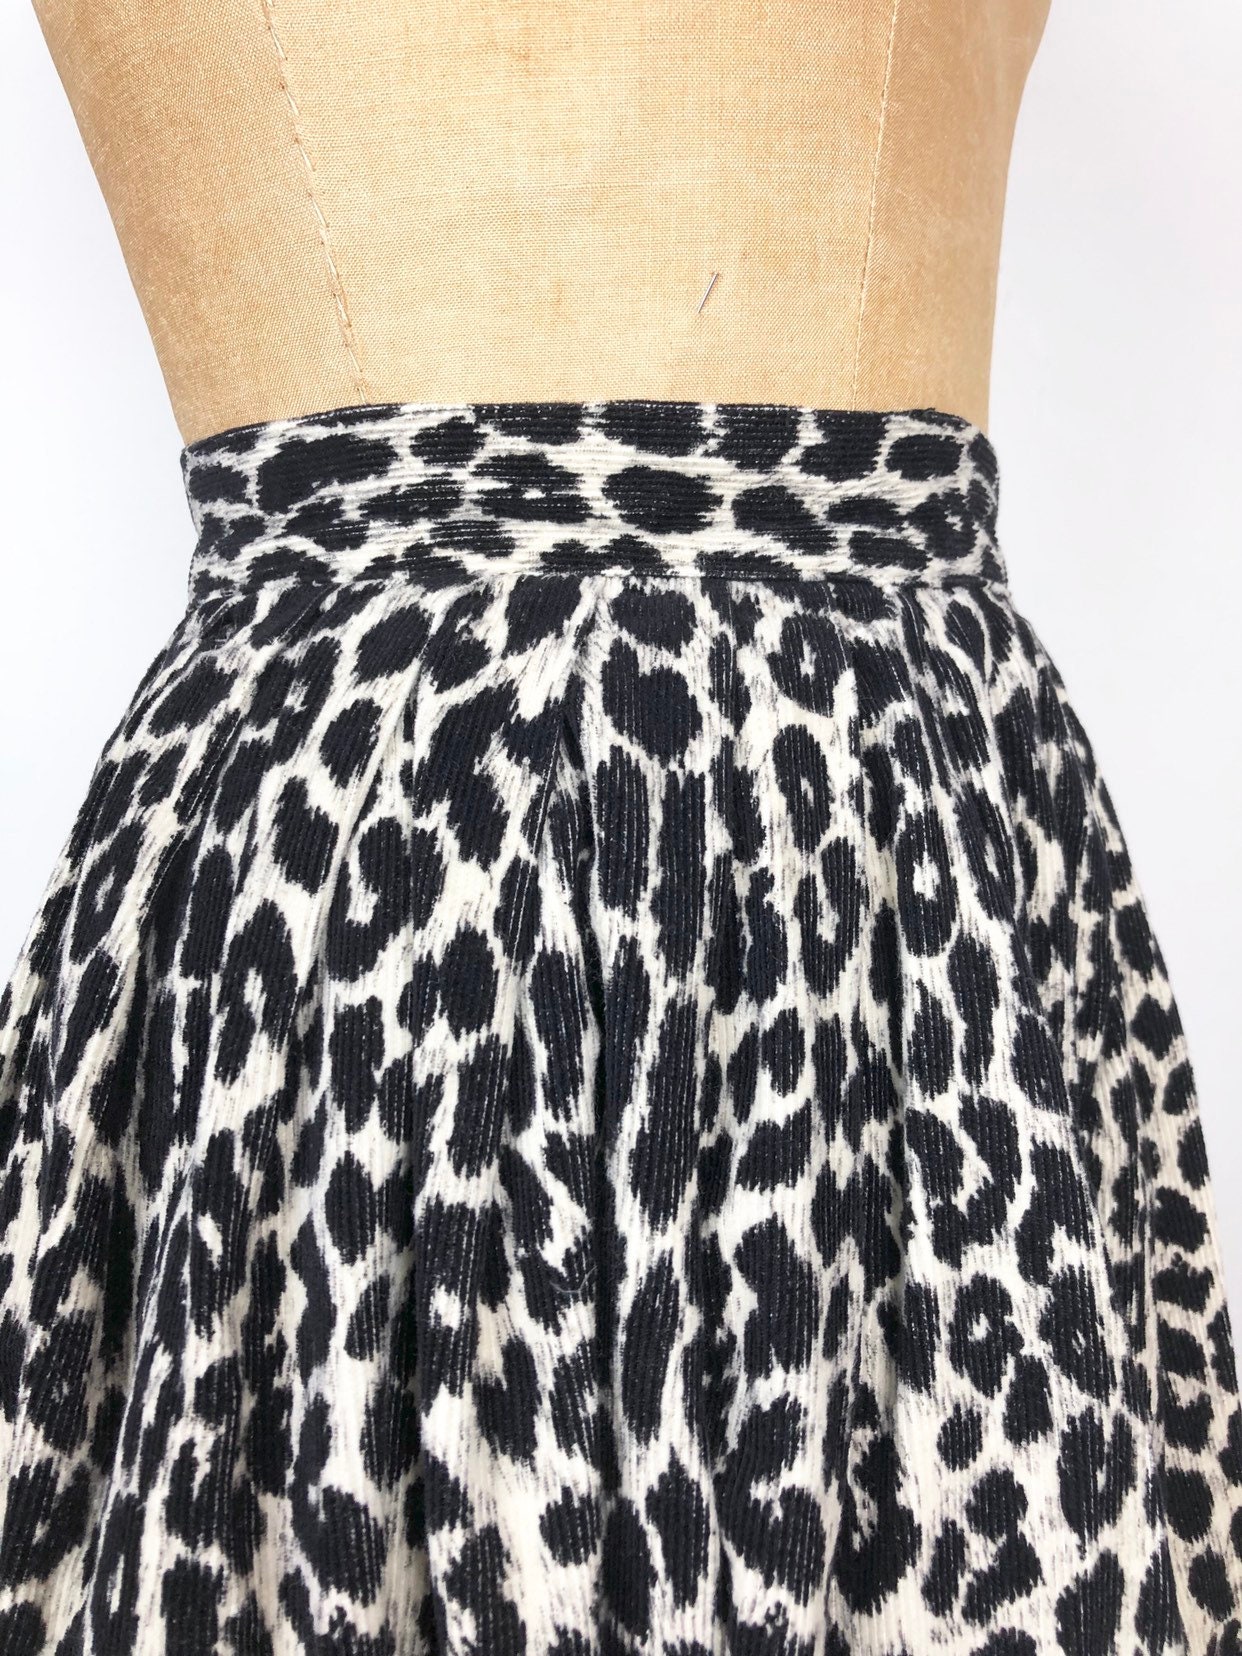 CUTE 1950s Leopard Print Corduroy Full Skirt S | Etsy